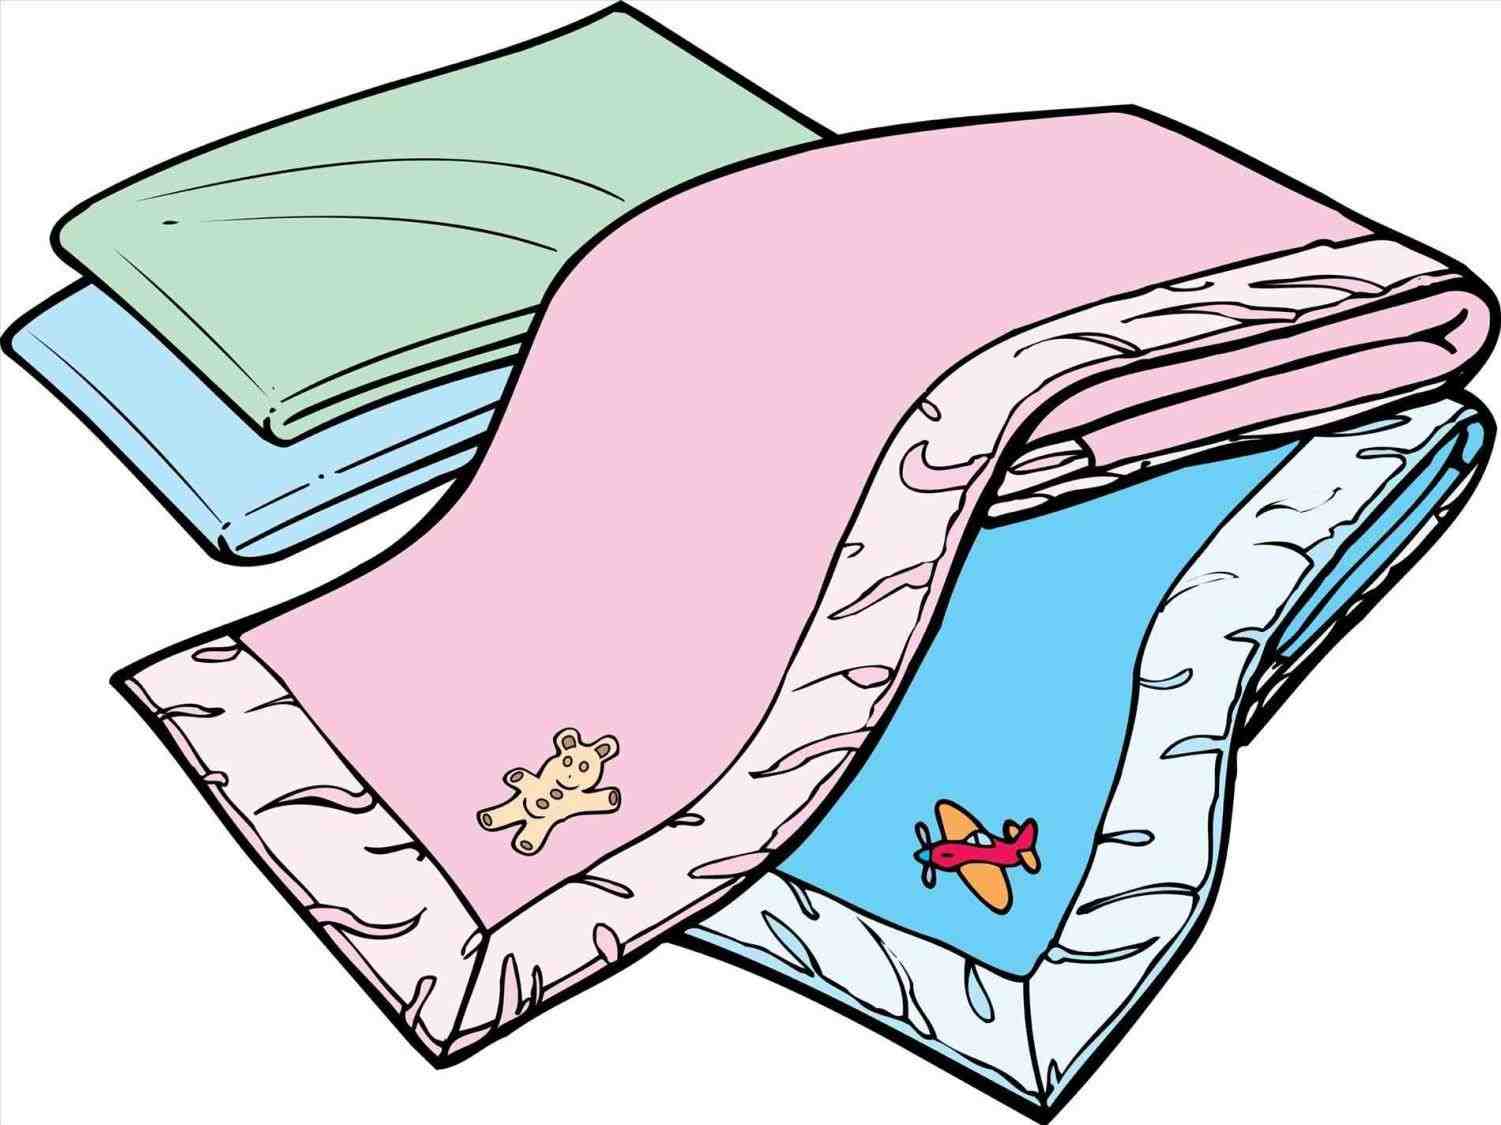 Blanket clipart folded towel, Blanket folded towel Transparent FREE for download on ...